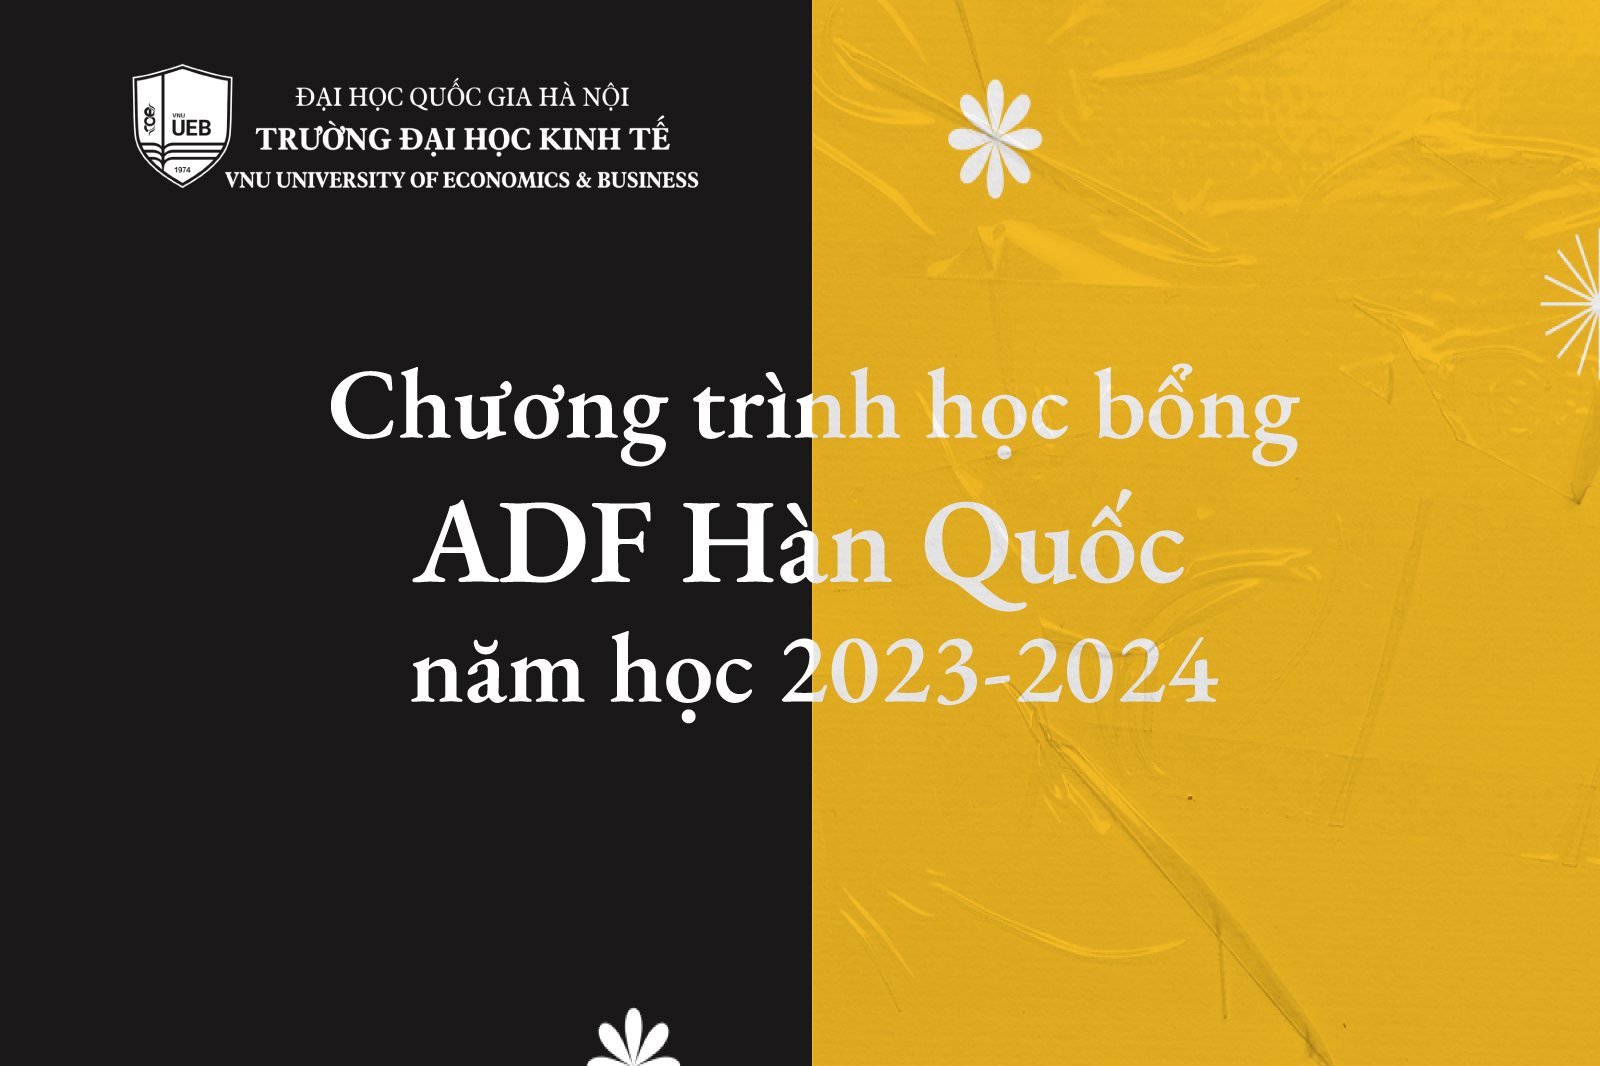 Chương trình học bổng ADF, Hàn Quốc năm học 2023-2024